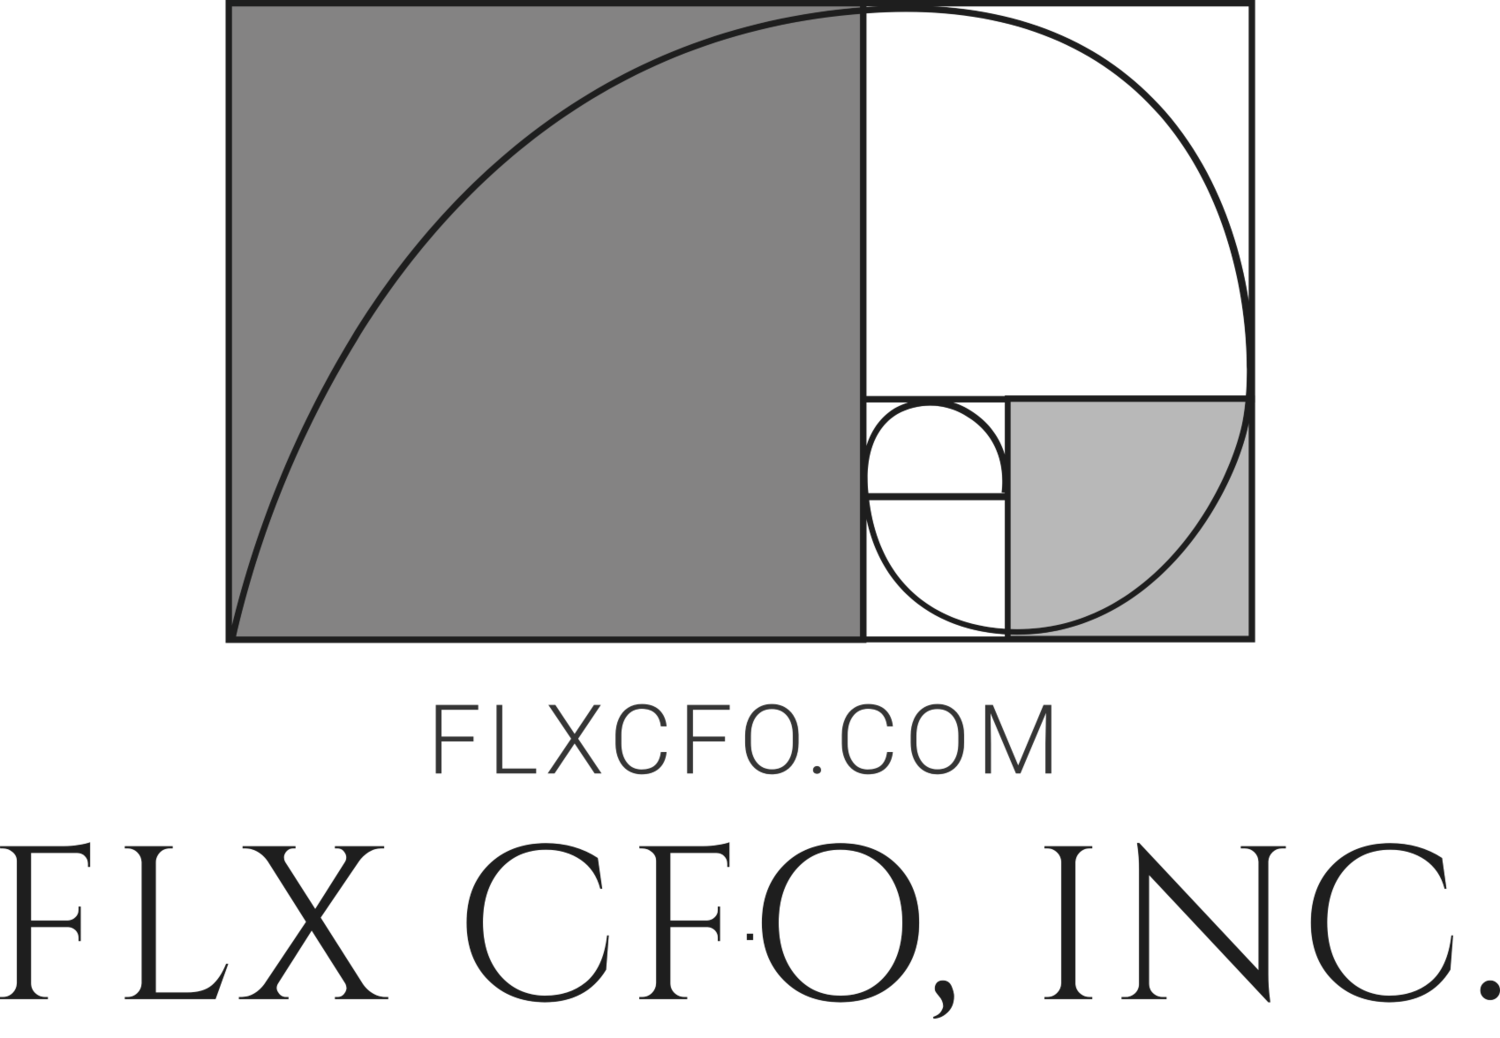 FLX CFO, INC.